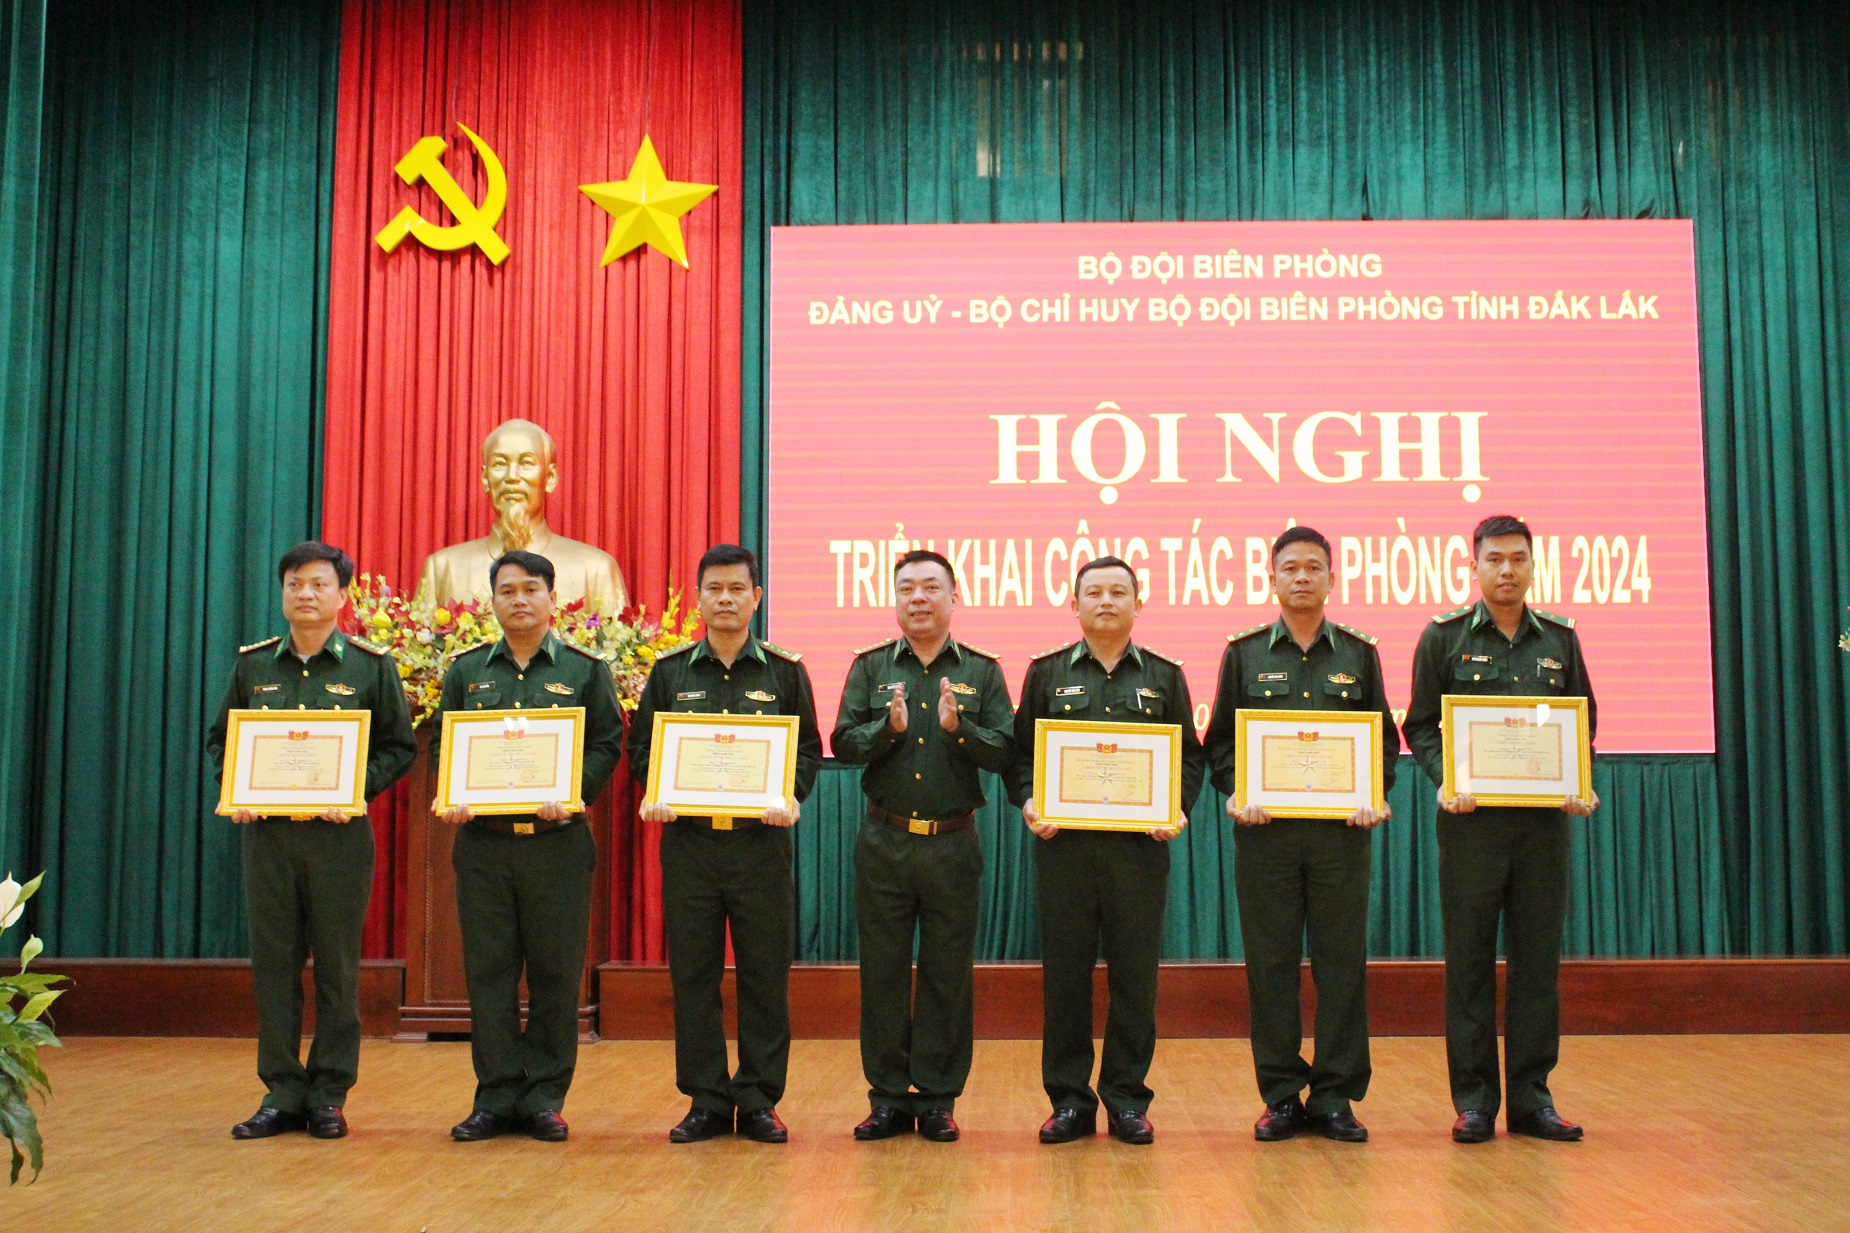 Bộ đội Biên phòng tỉnh Đắk Lắk triển khai công tác biên phòng và phát động thi đua quyết thắng năm 2024